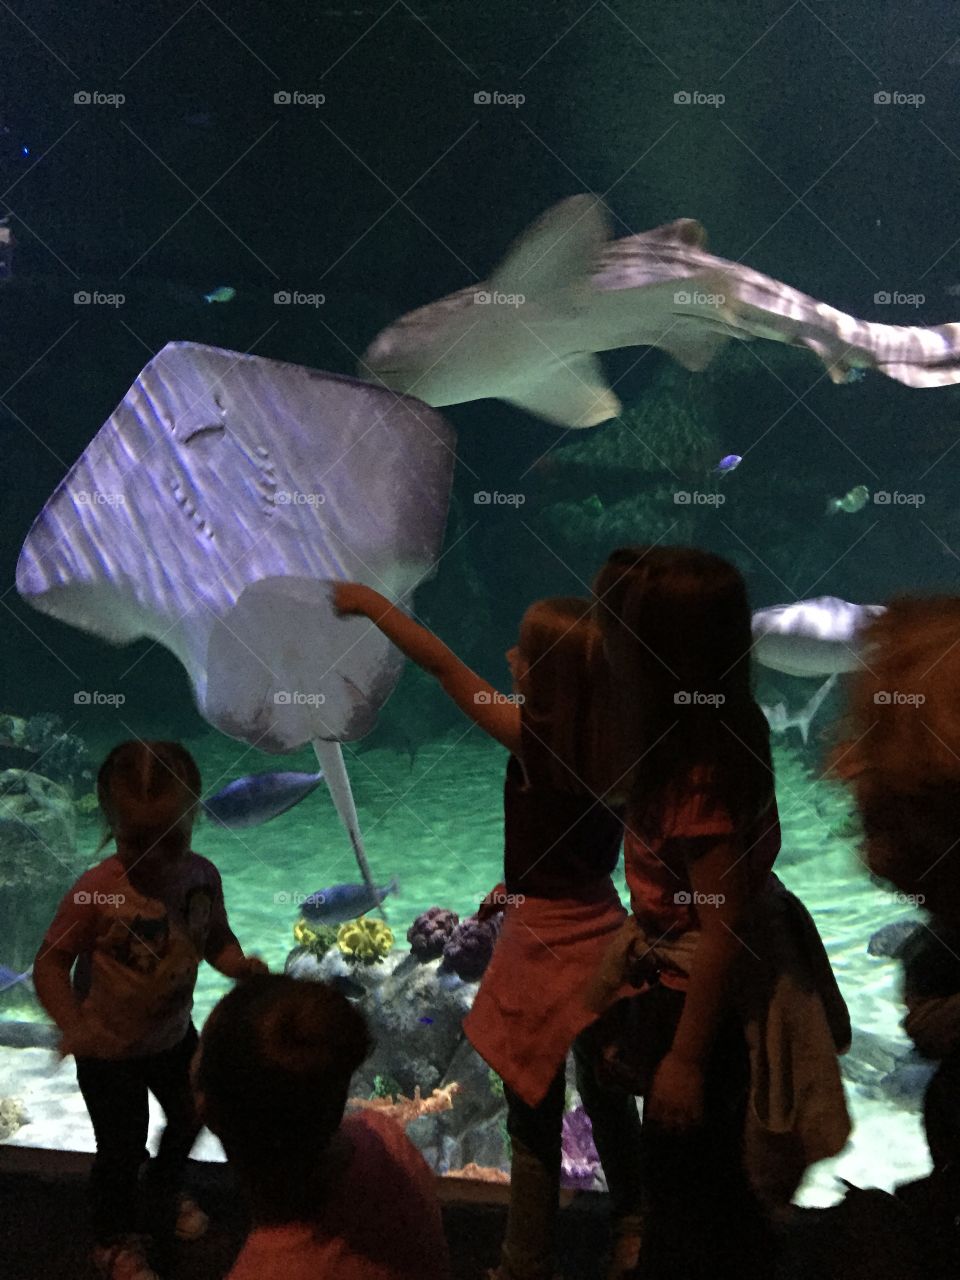 Fun at the aquarium. Sting Ray at the aquarium